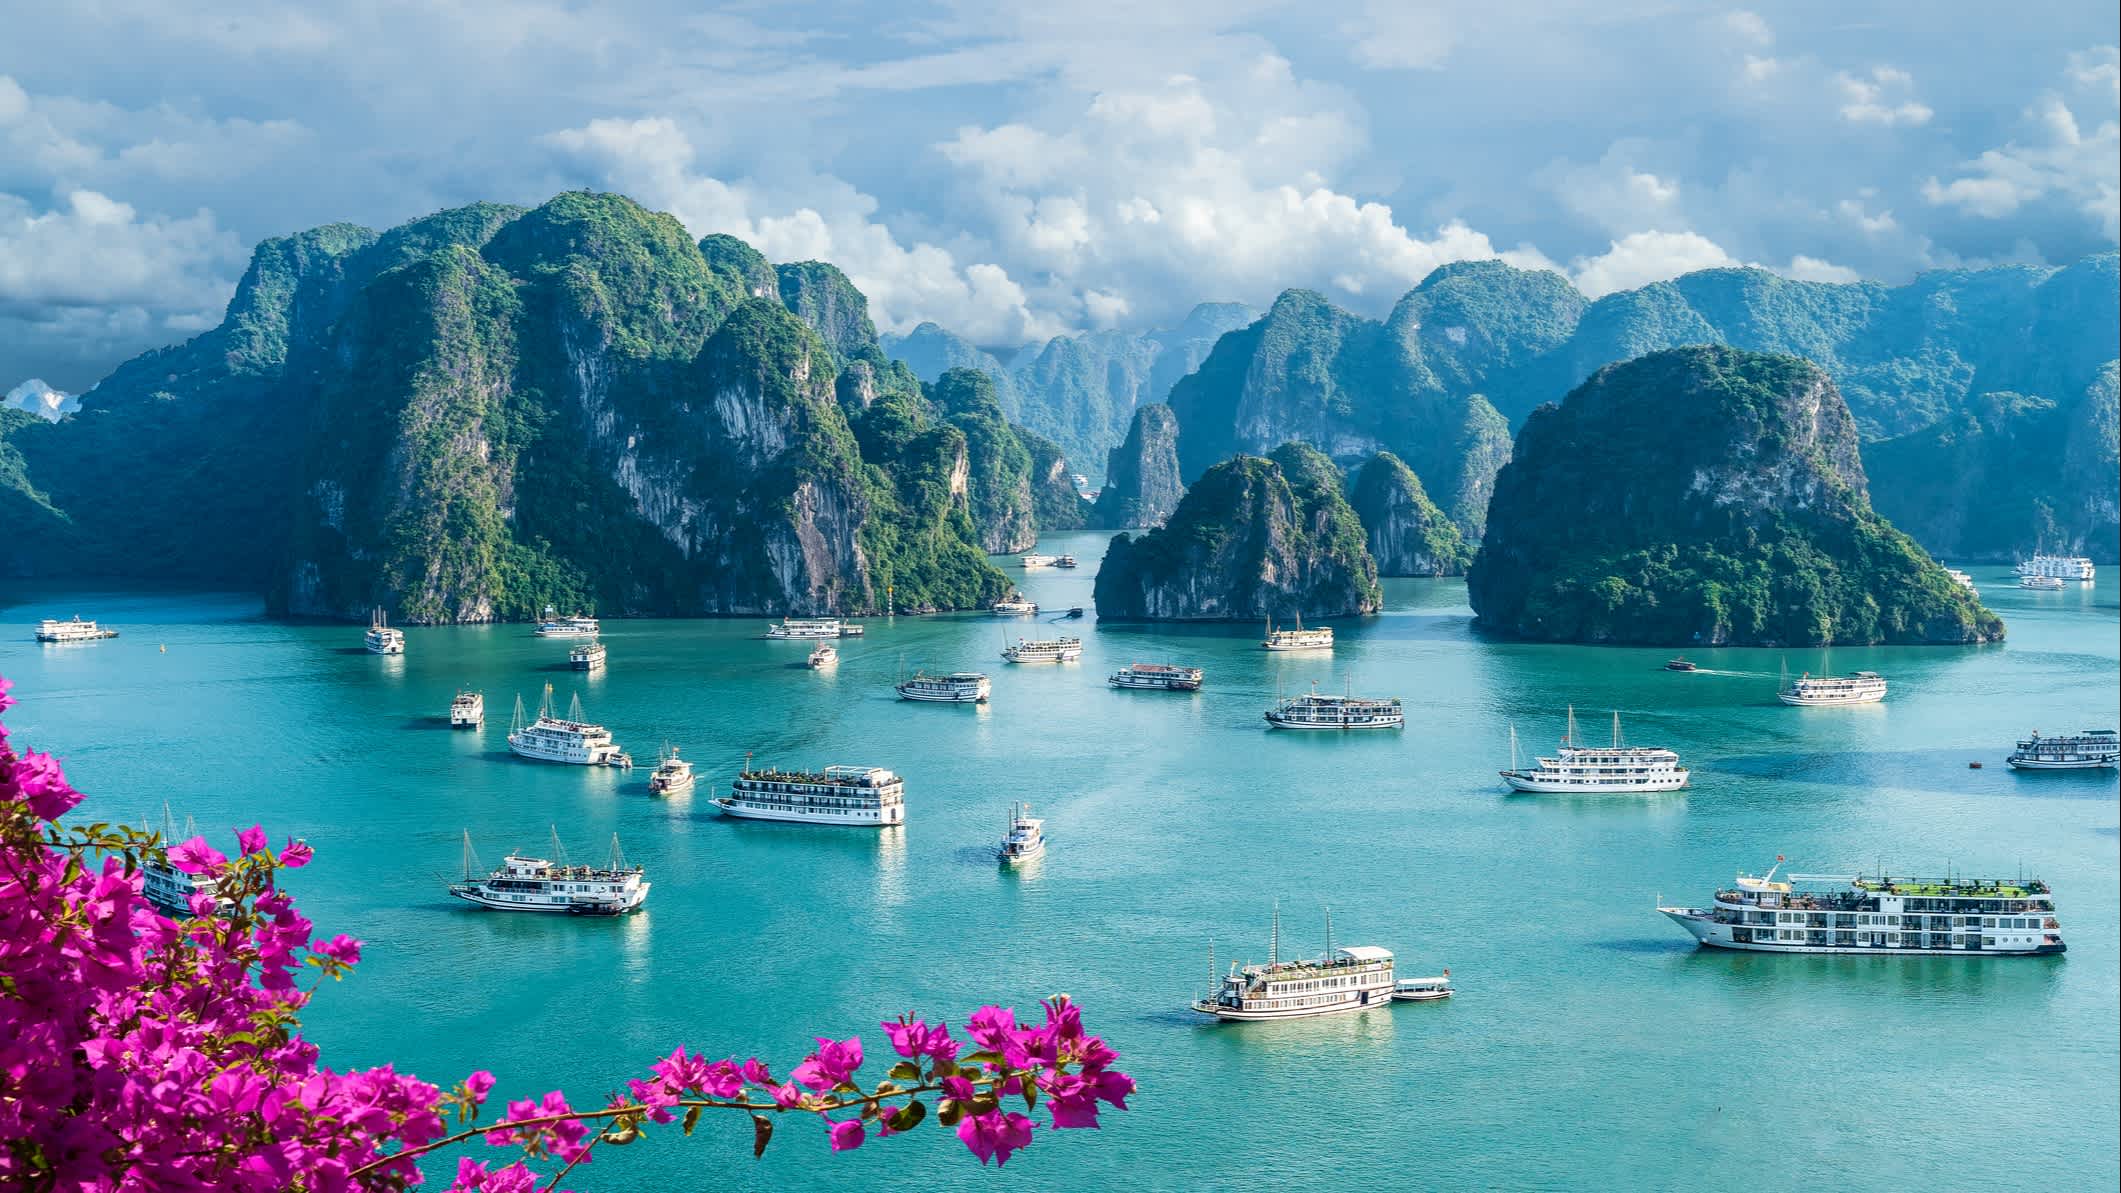 Vue de bateaux sur la baie d'Halong, Vietnam

